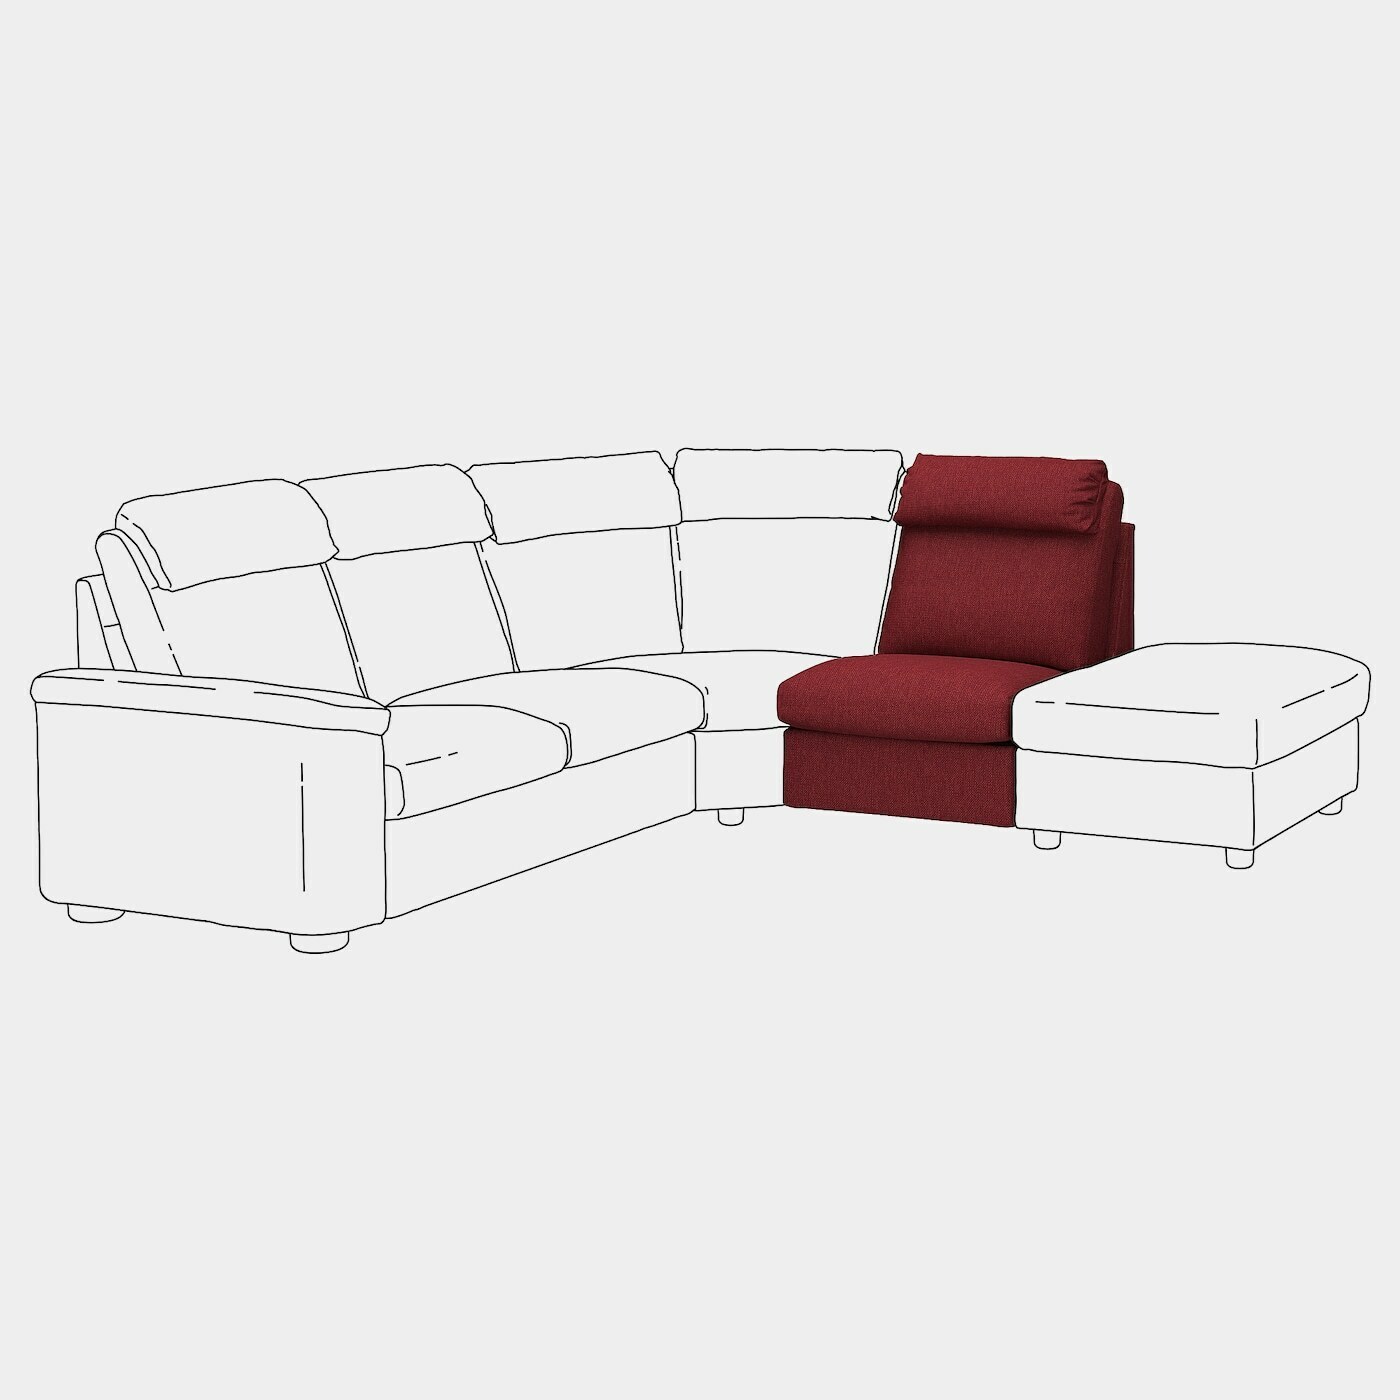 LIDHULT Bezug Sitzelement  - extra Bezüge - Möbel Ideen für dein Zuhause von Home Trends. Möbel Trends von Social Media Influencer für dein Skandi Zuhause.